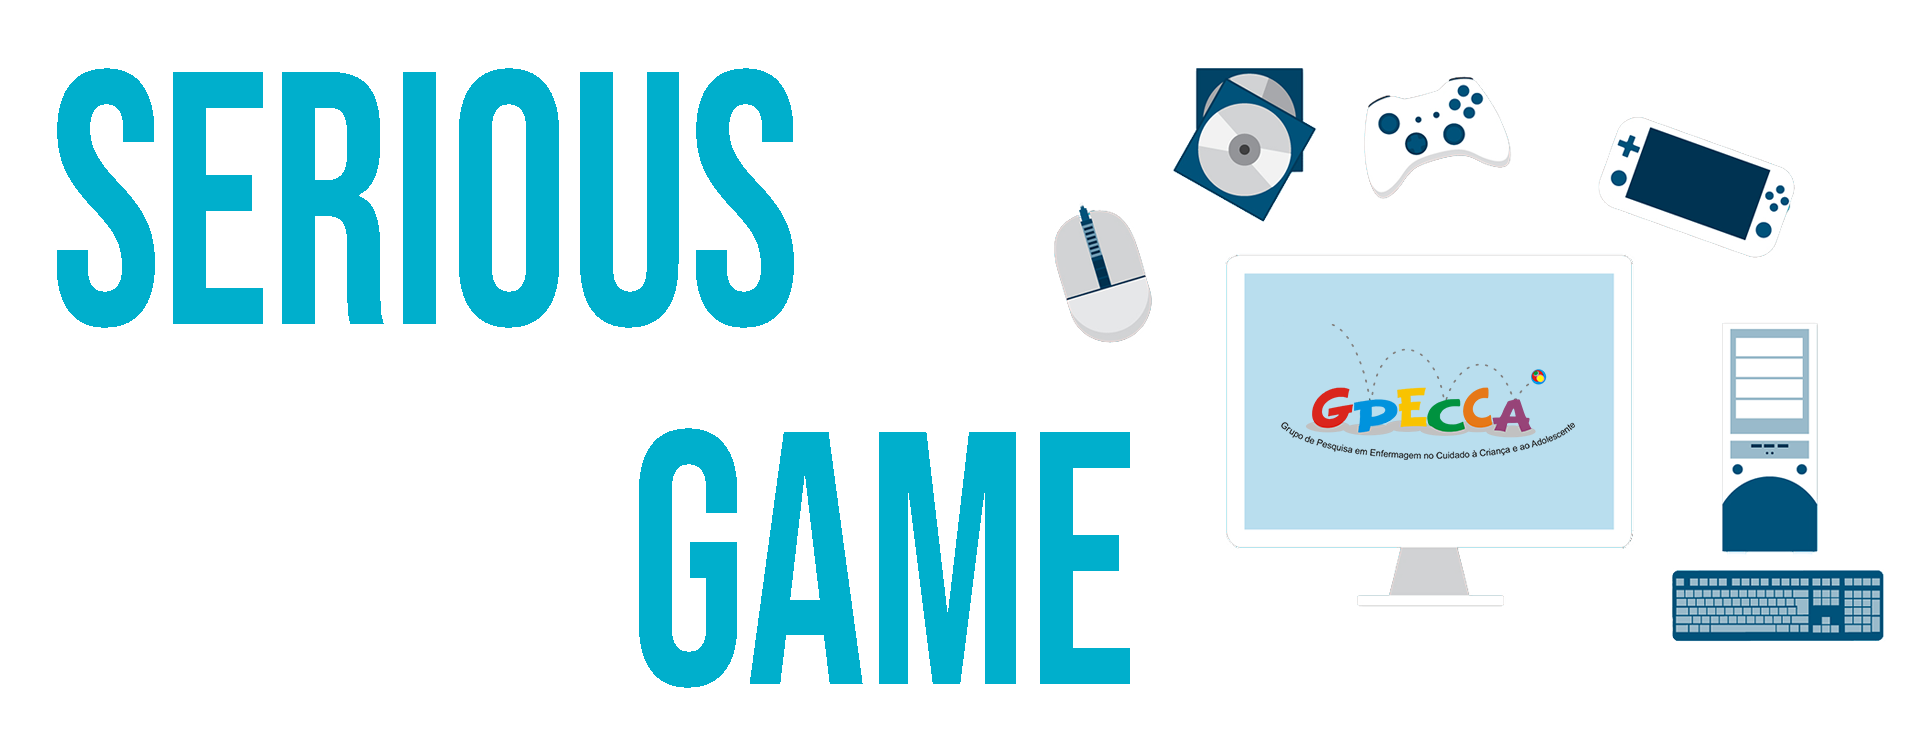 Jogos, Serious Games e Softwares